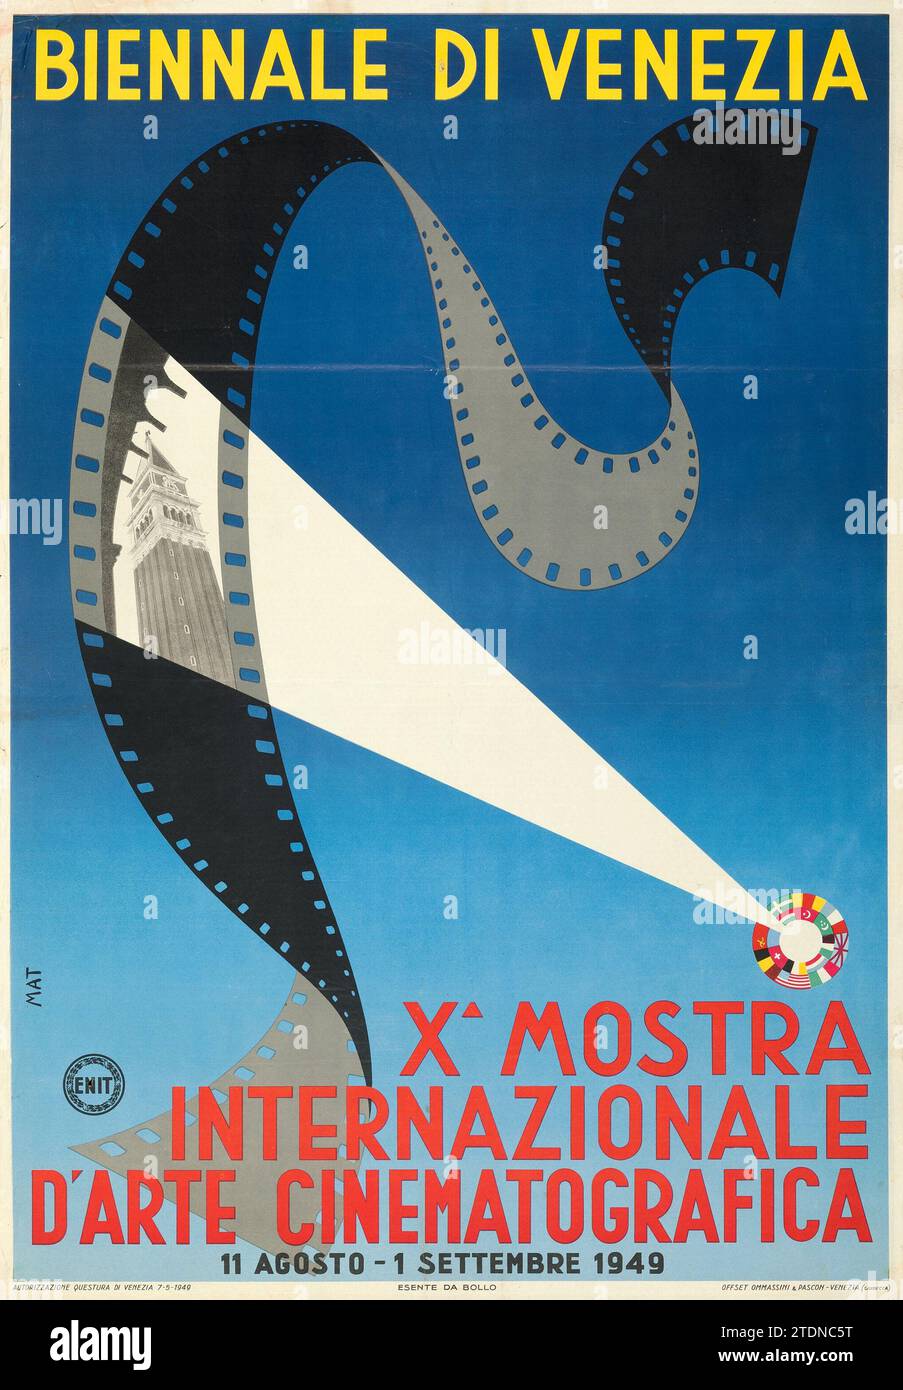 Film festival - Venice Biennale (ENIT, 1949) Italian Exhibition Poster - Cinematografica - Biennale di Venezia Stock Photo